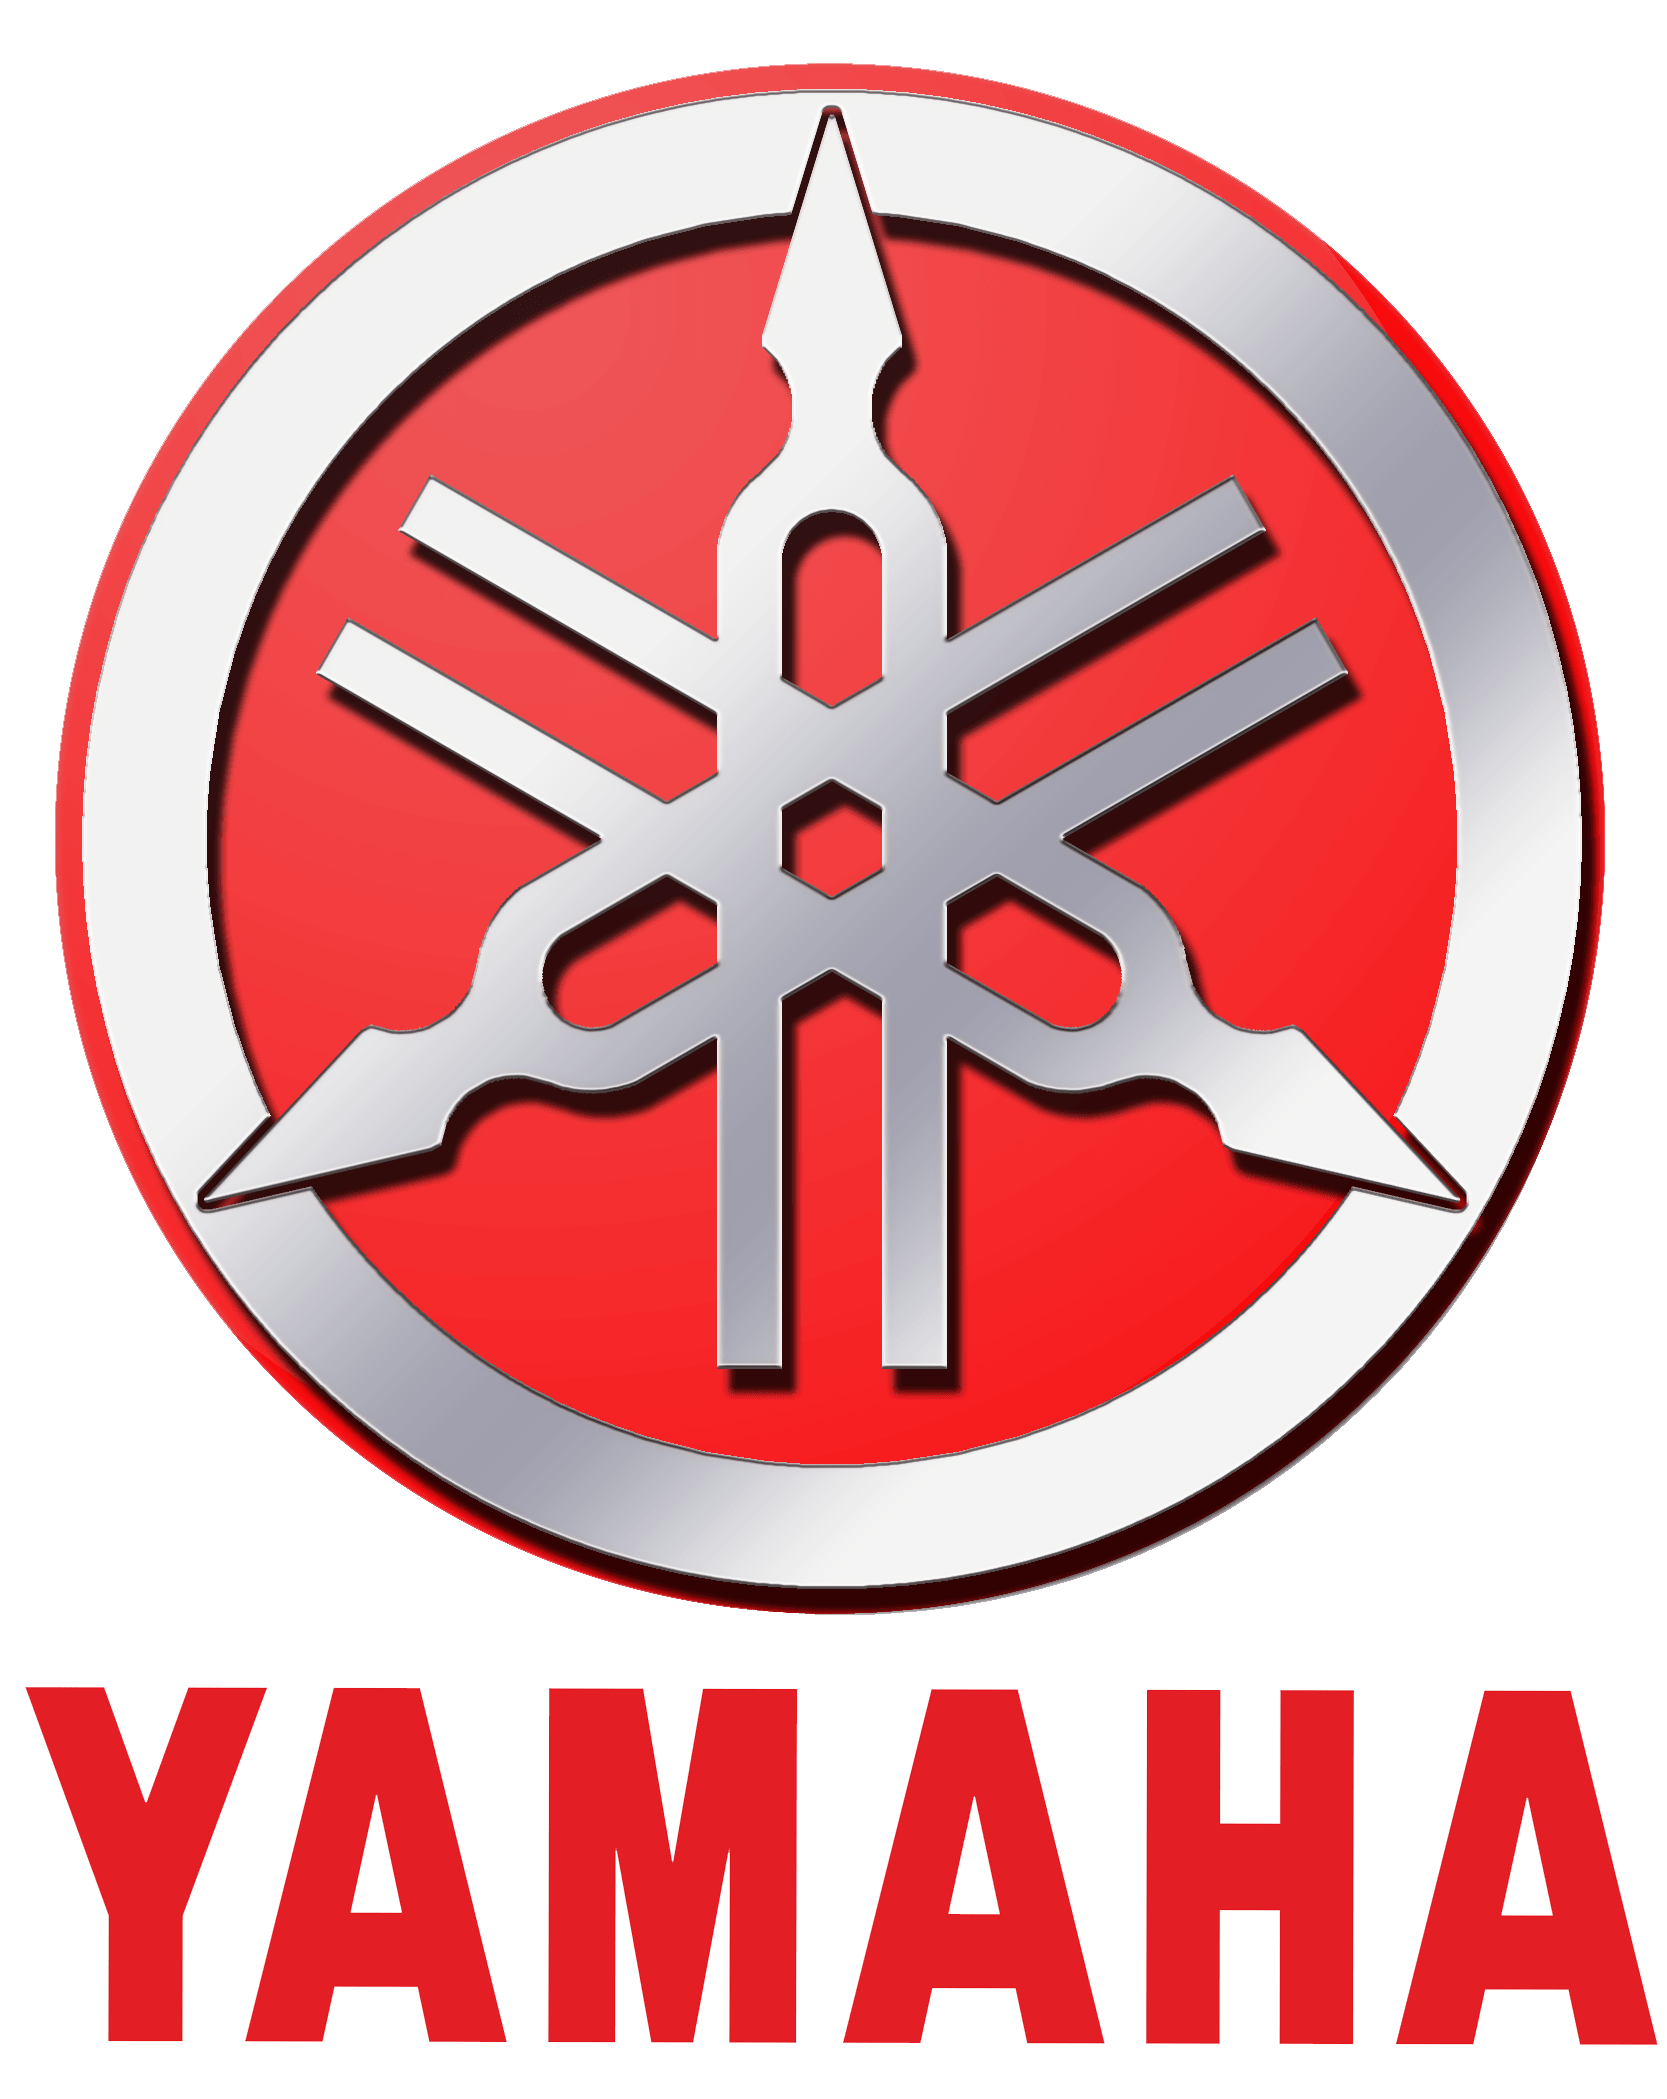 Piezas y recambios originales para motos Yamaha